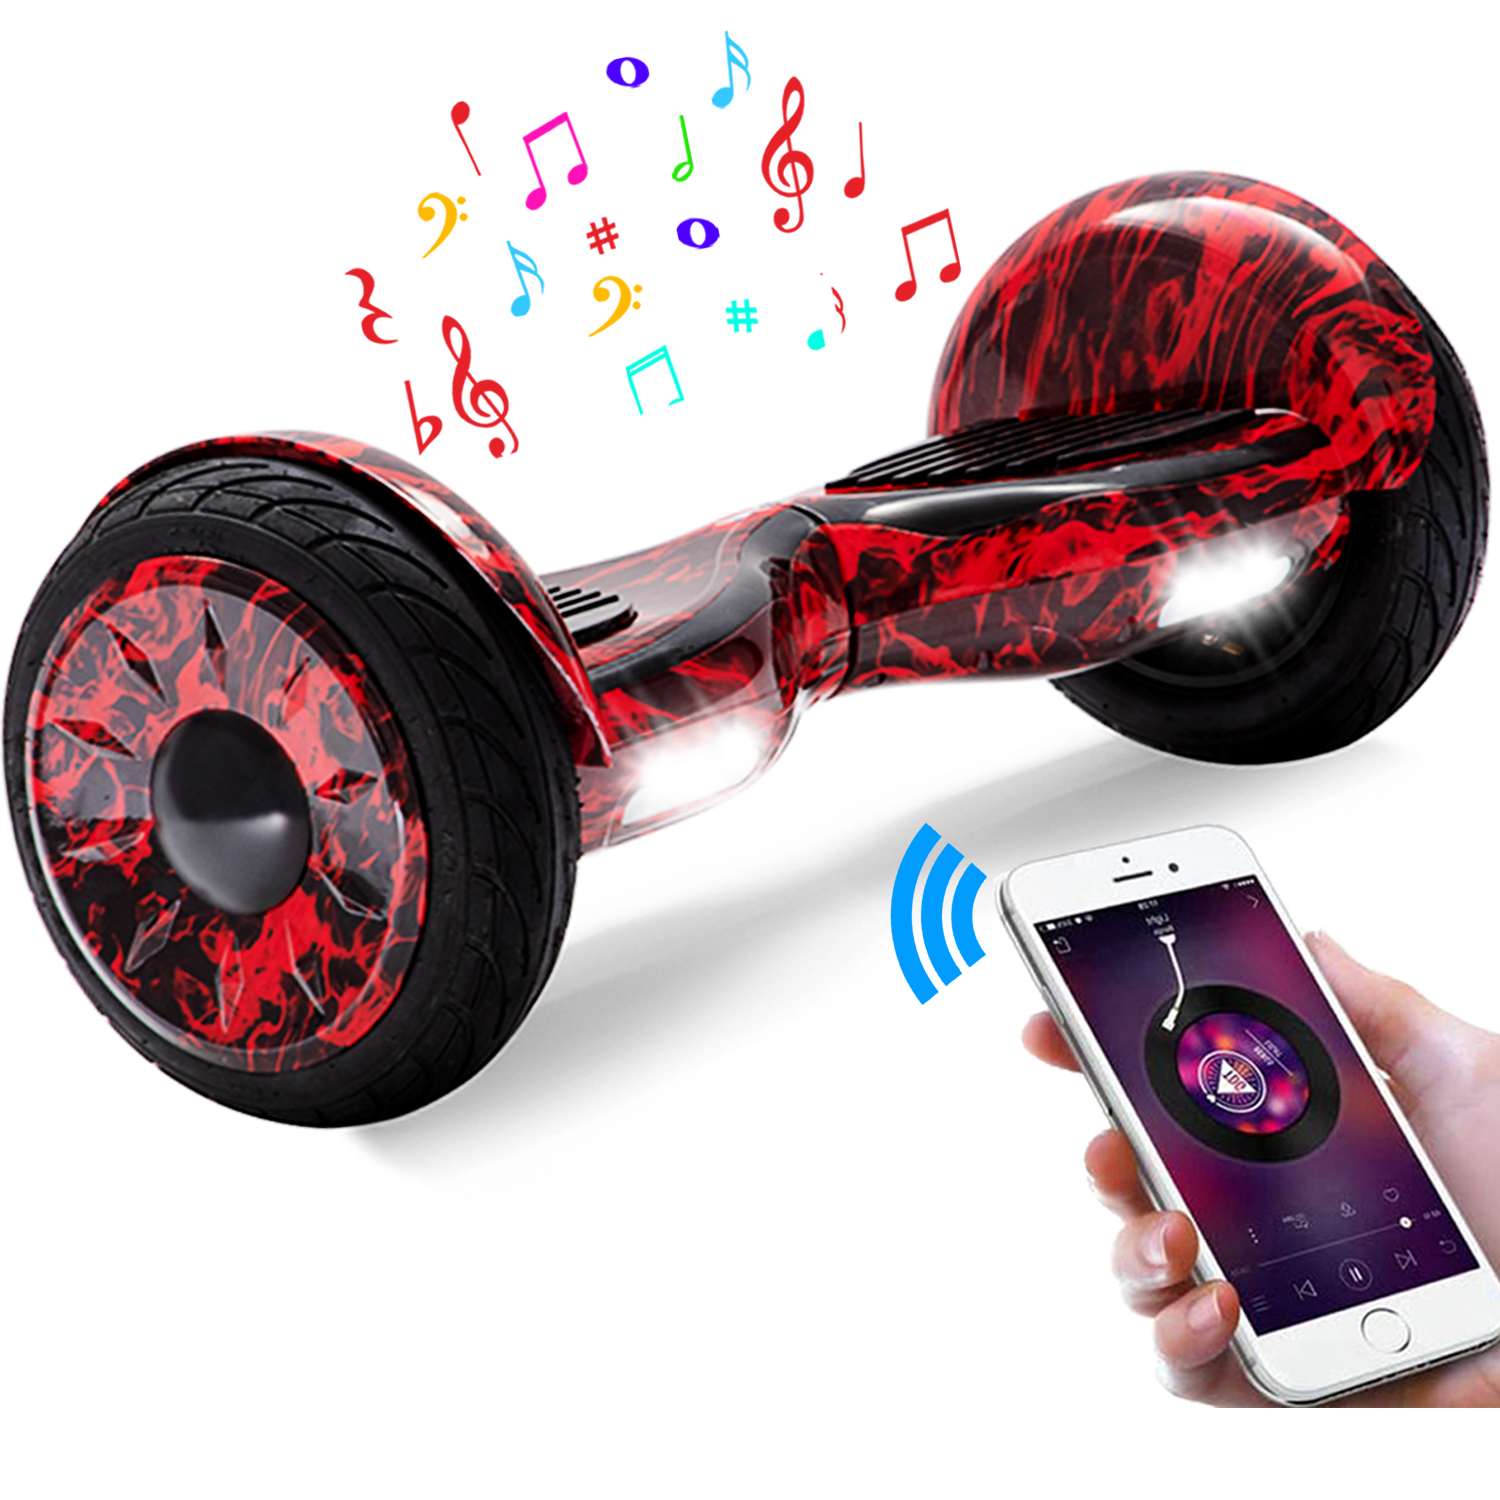 10" rote Flamme Hoverboard mit Bluetooth, Musik Lautsprecher und Led Leuchten - 700W 15km/h